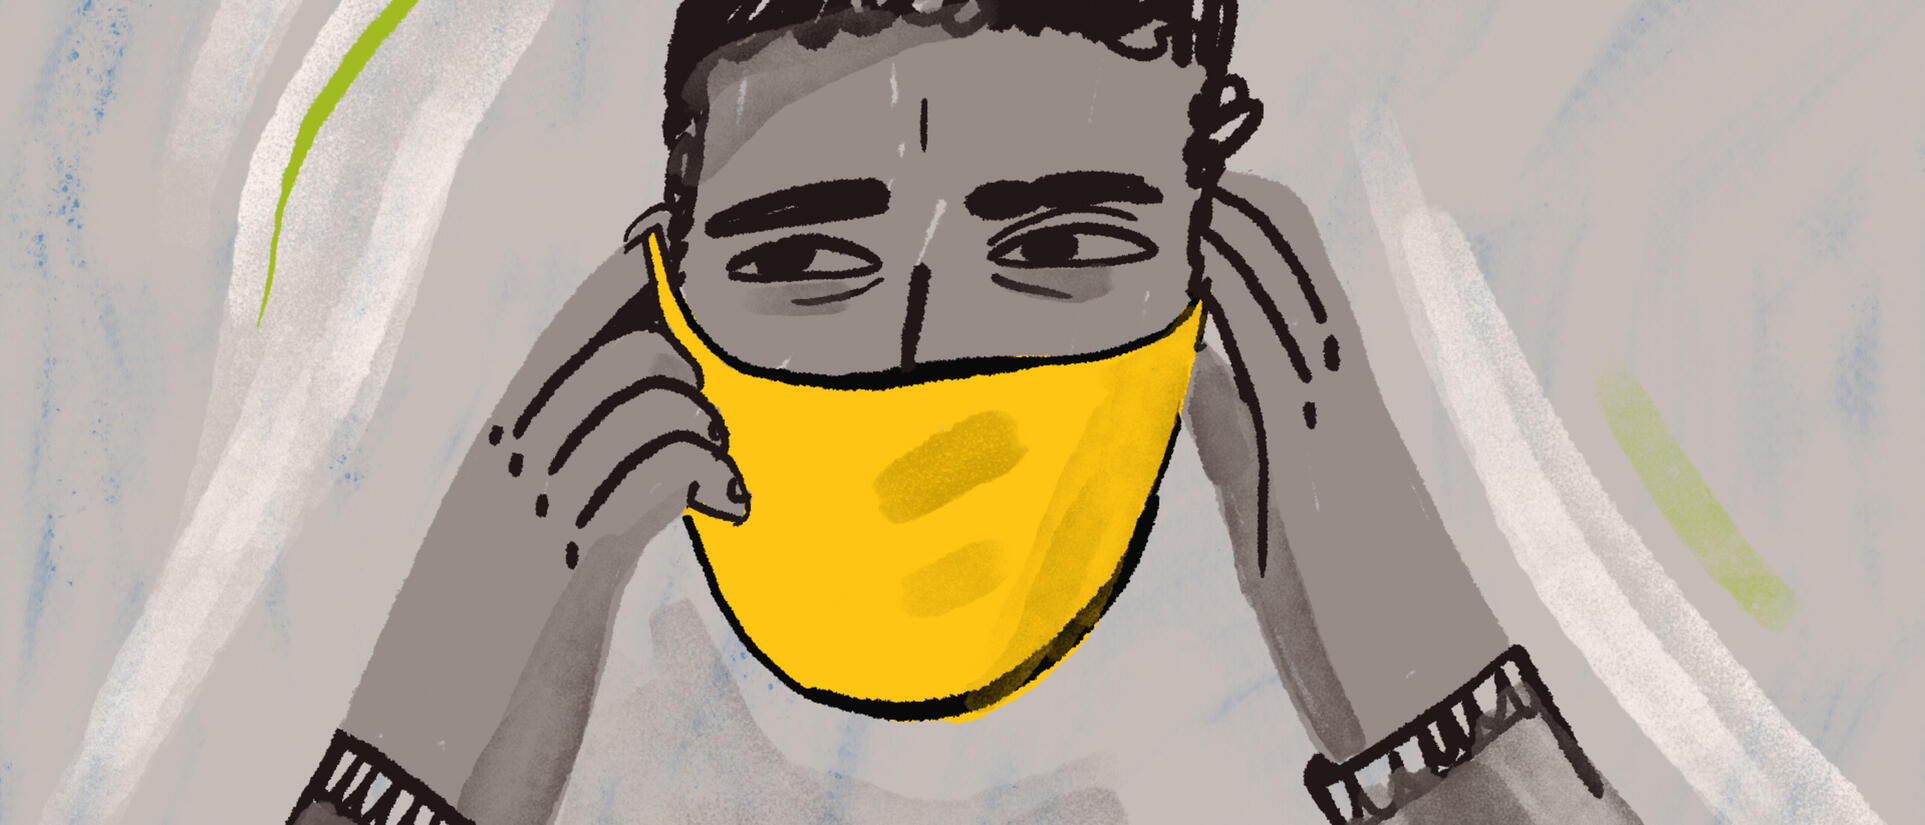 llustration: Hassan trägt einen gelben Mund-Nasen-Schutz